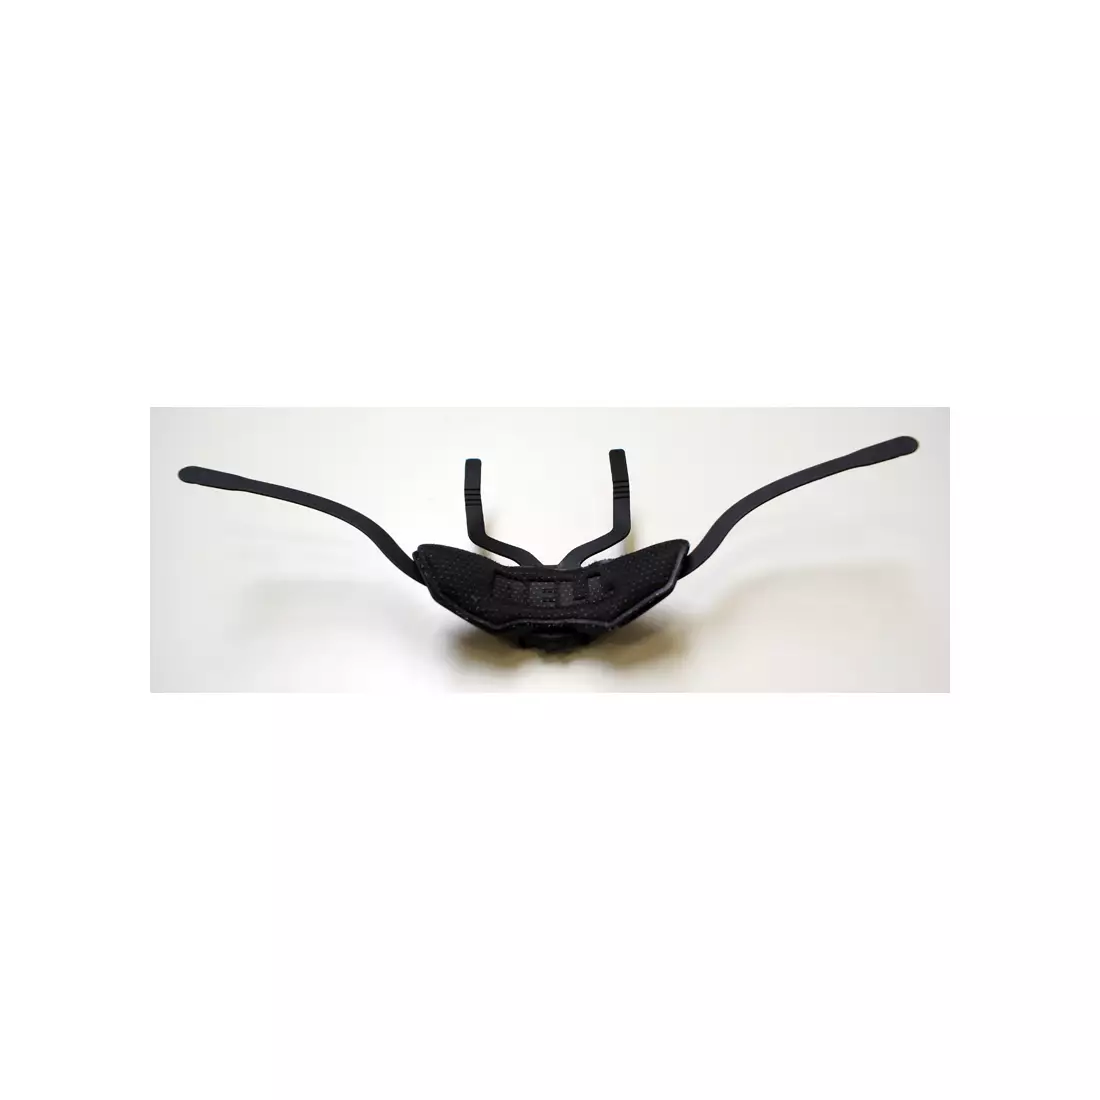 BELL přizpůsobení obvodu hlavy helmě SUPER SPPED DIAL FS black S/M BEL-8009141